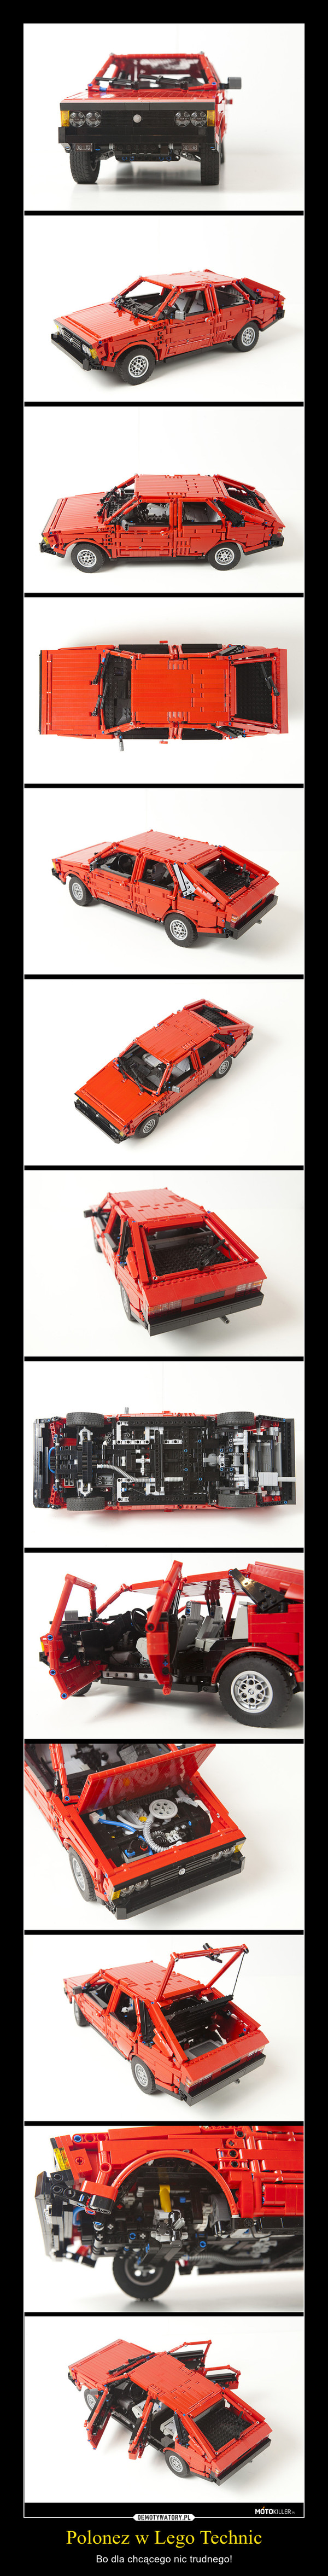 Polonez w Lego Technic – Bo dla chcącego nic trudnego! 